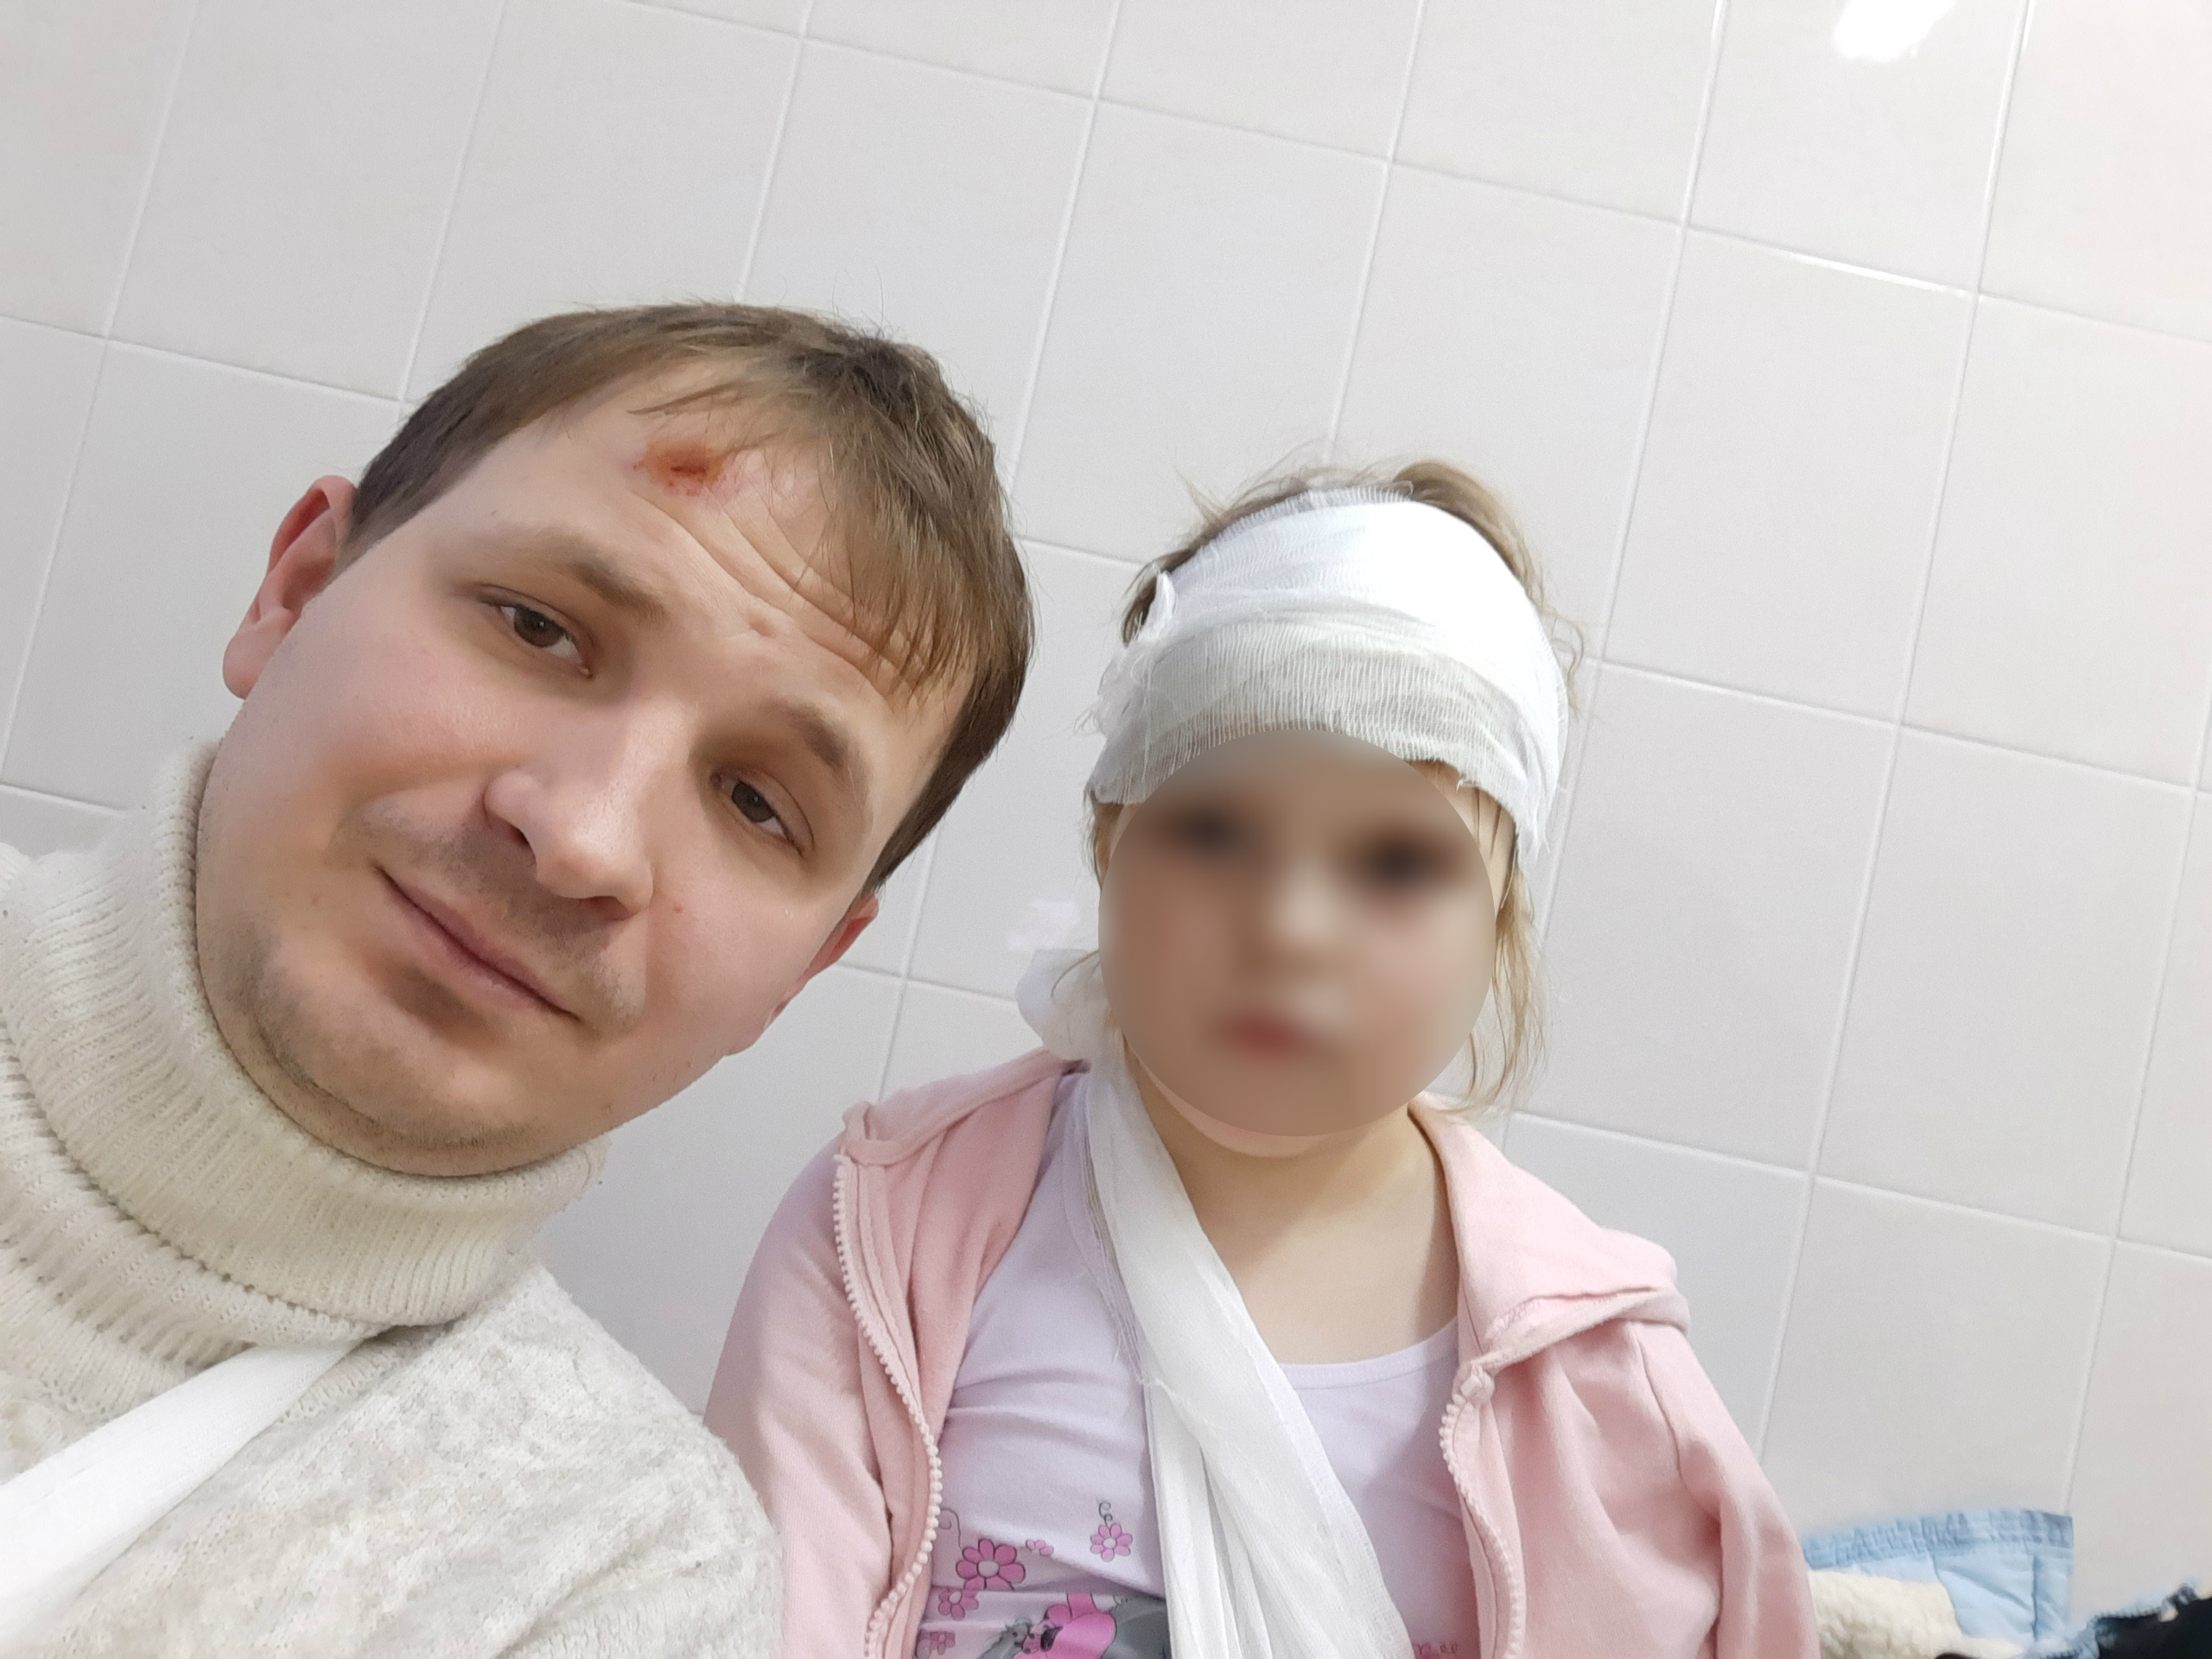 Мужчина принес публичные извинения и опубликовал селфи с пострадавшей девочкой из больницы